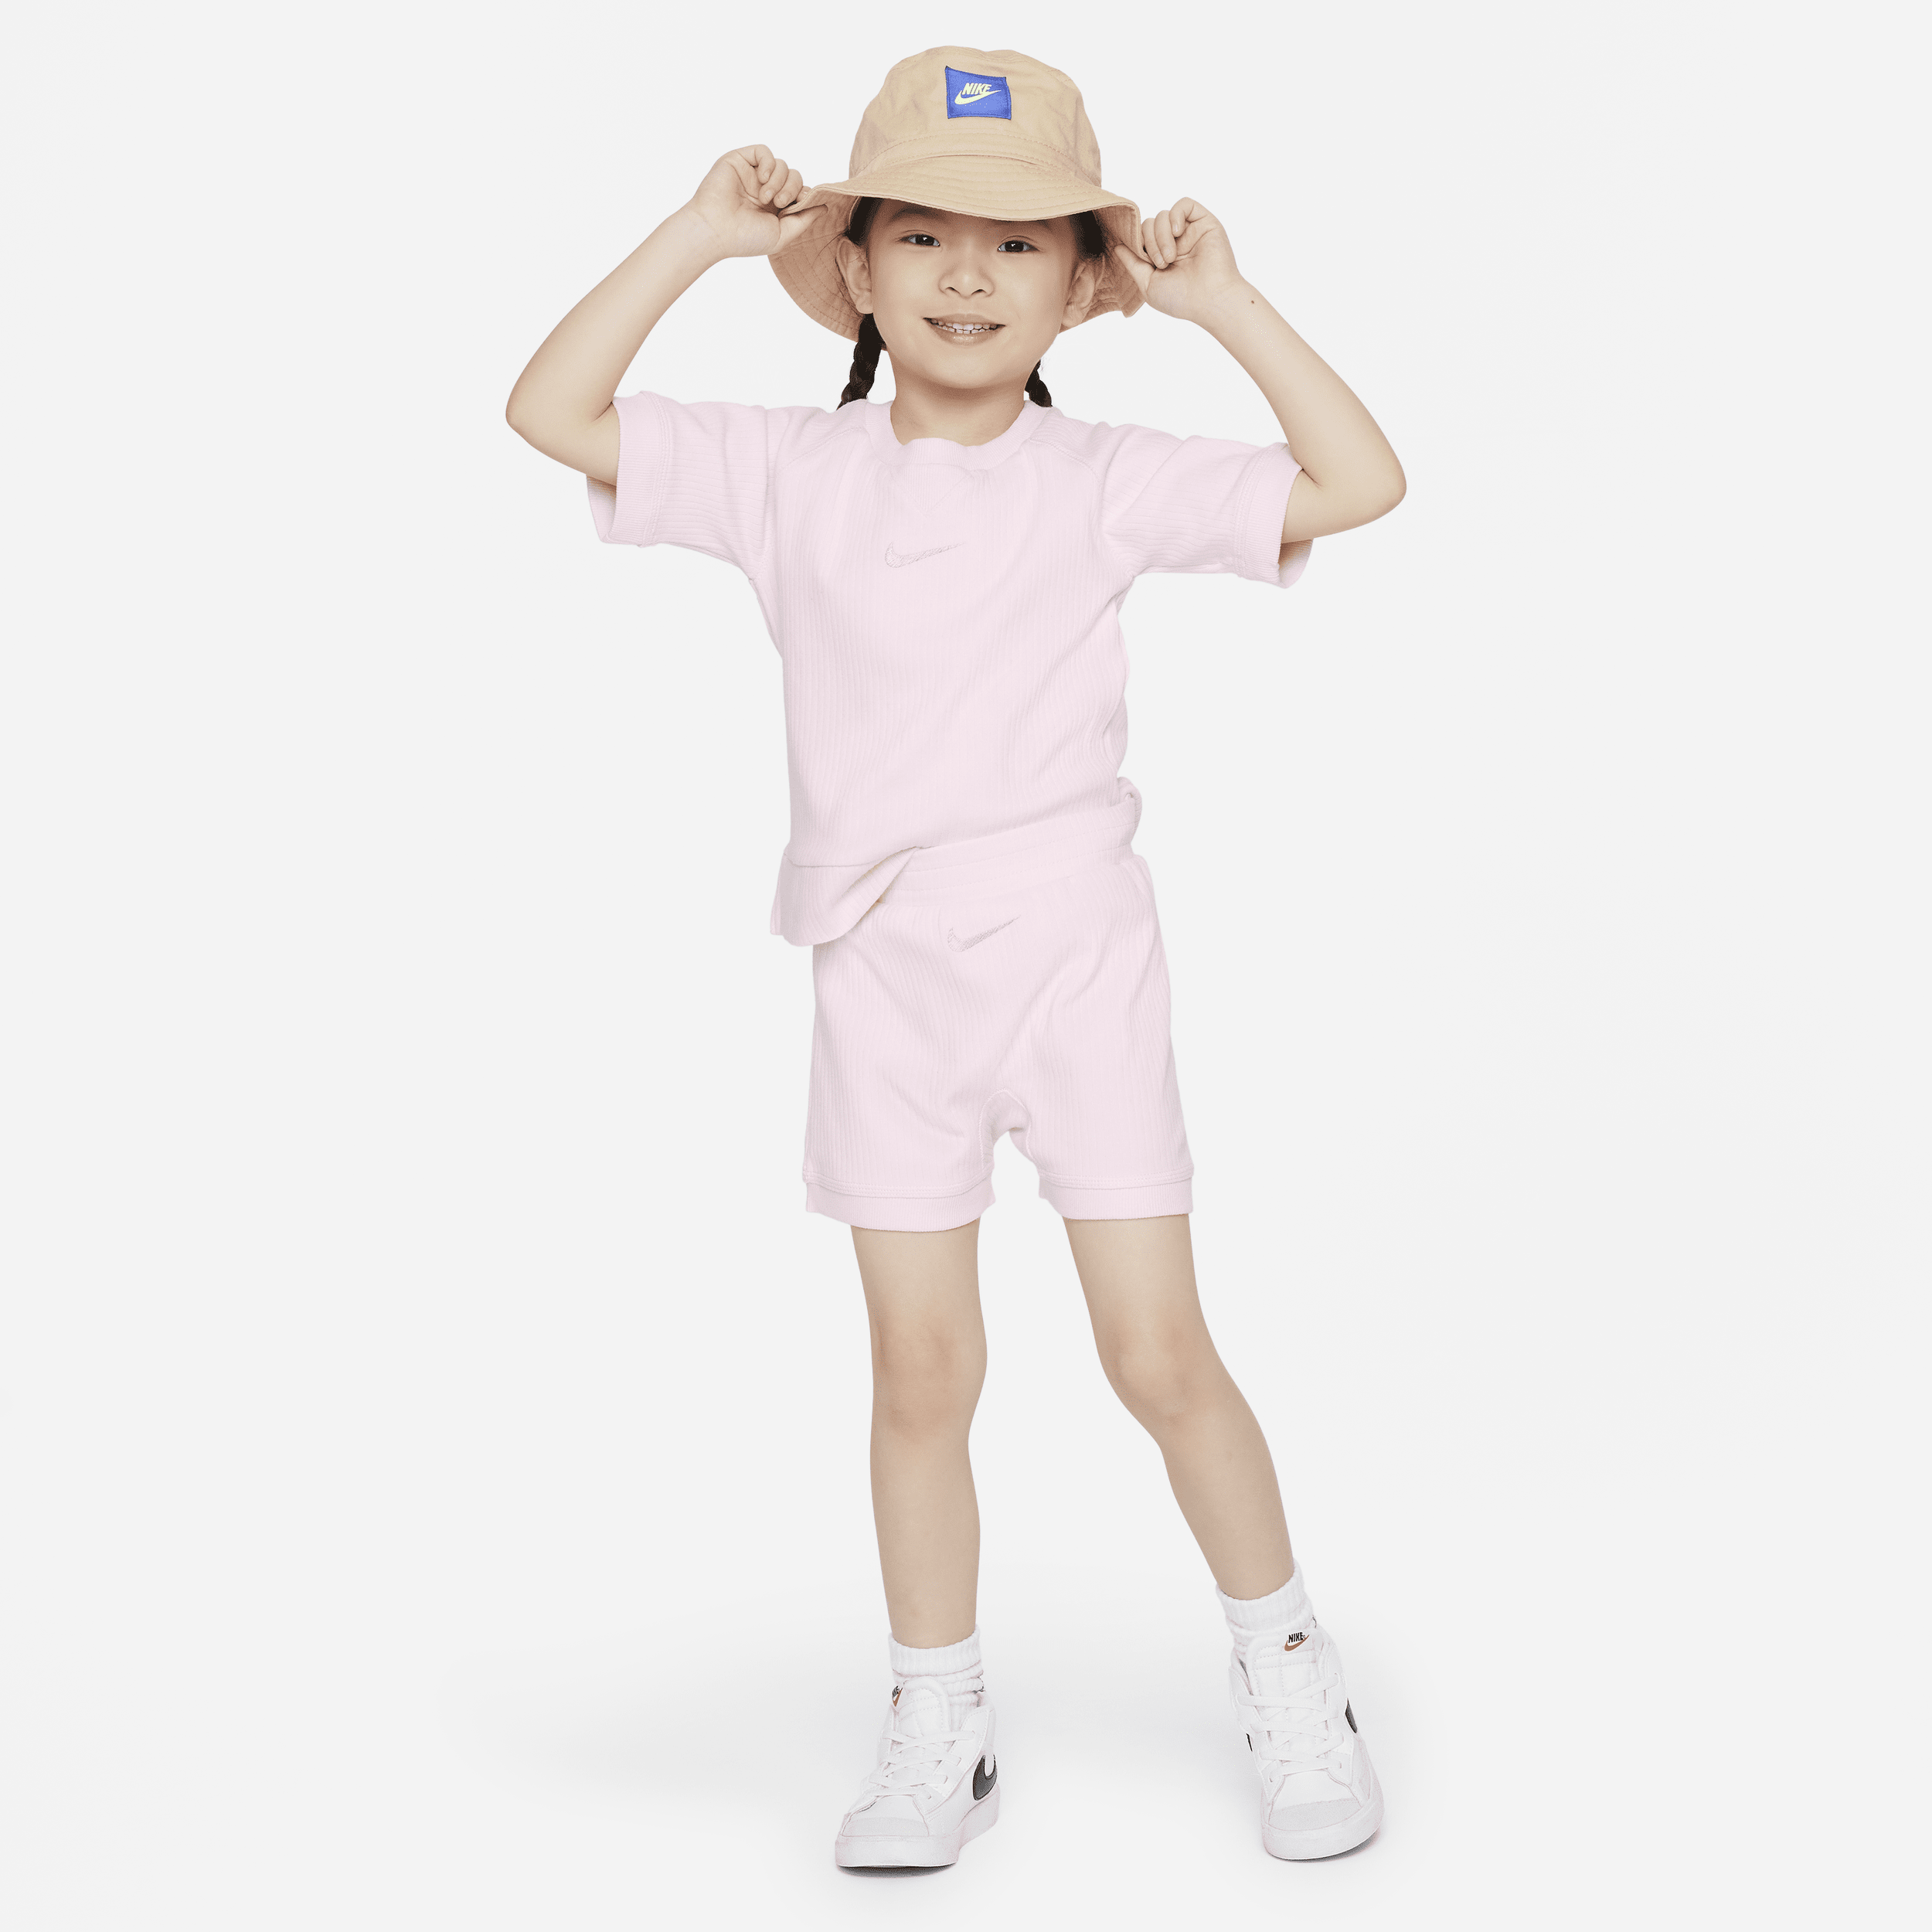 Nike Babies' Readyset Toddler Shorts Set In Pink